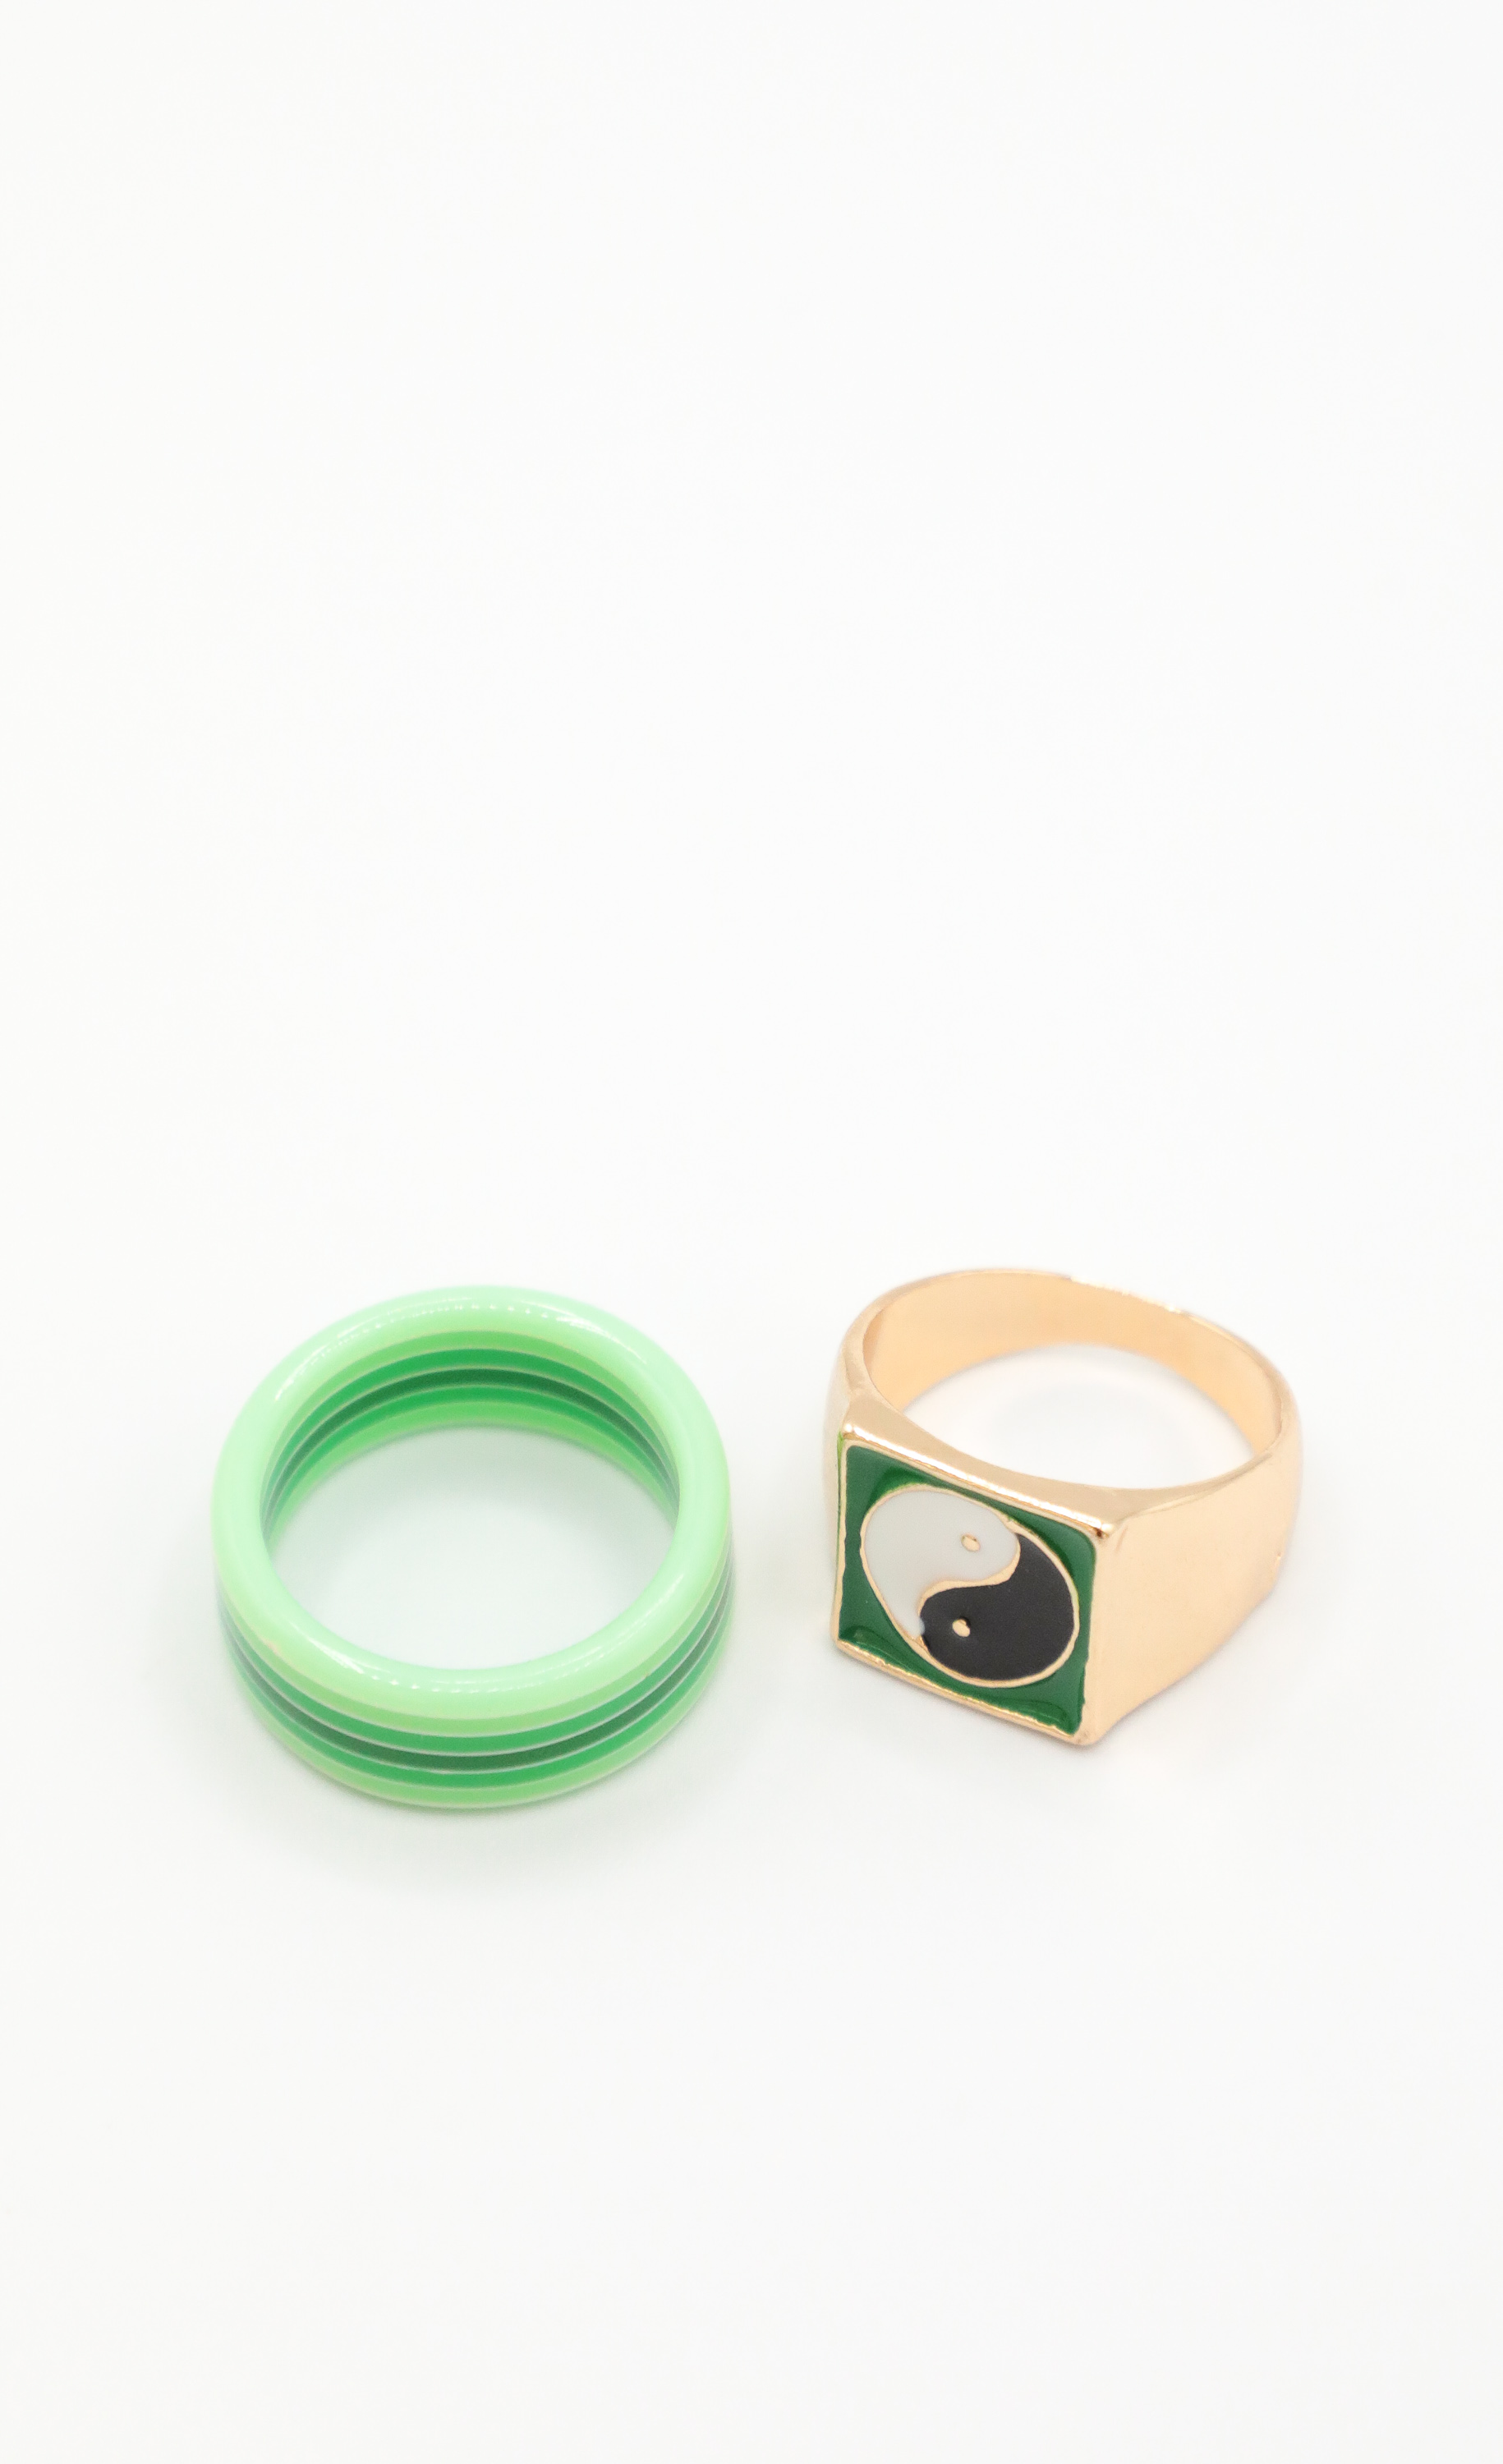 Gemini Twin Ring Set in Green